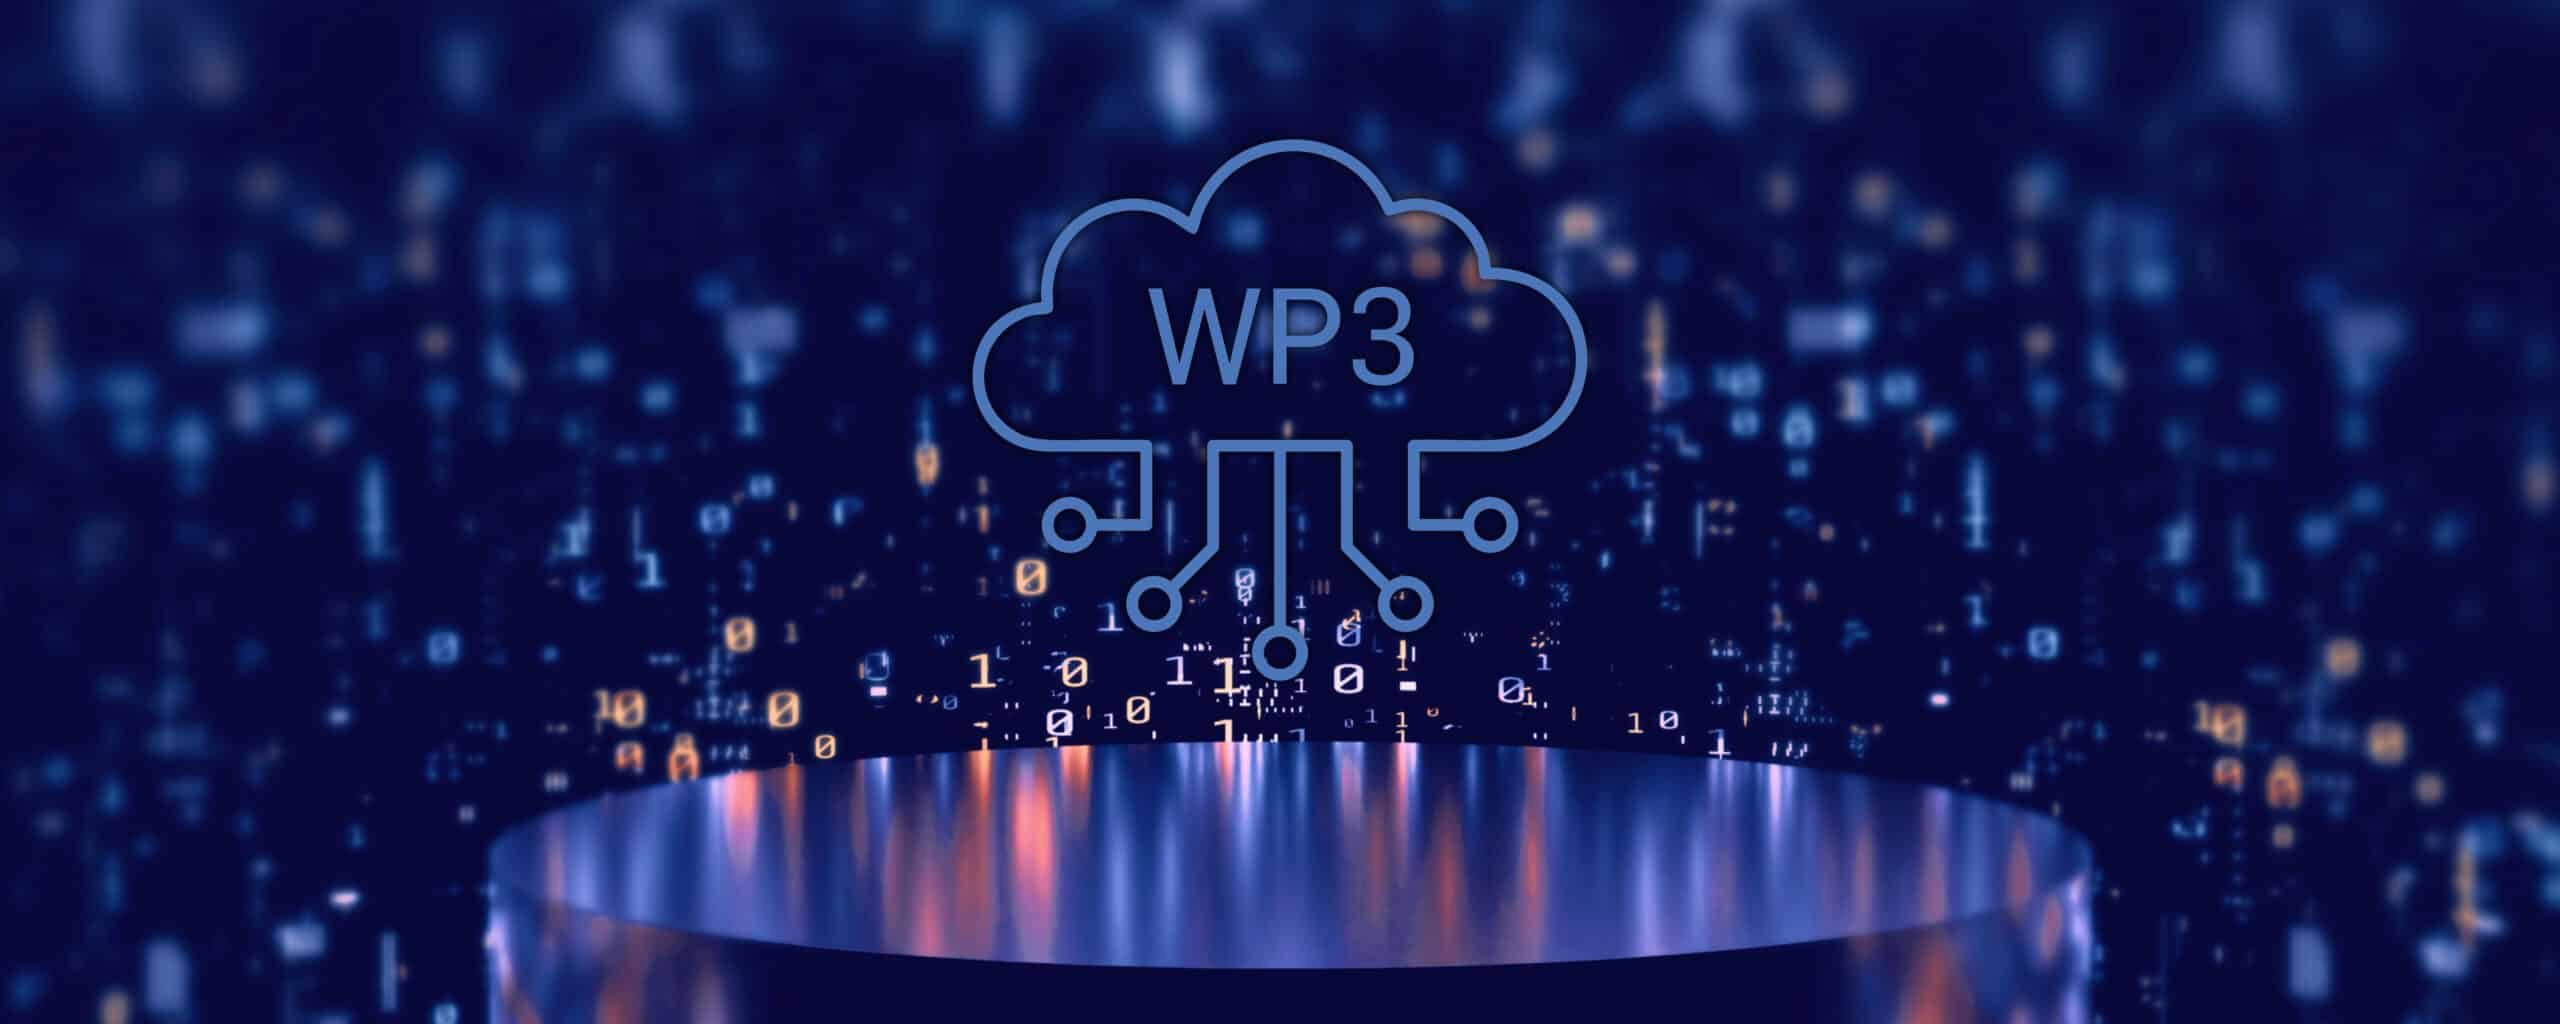 WP3: das technlogische Herzstück der dwpbank